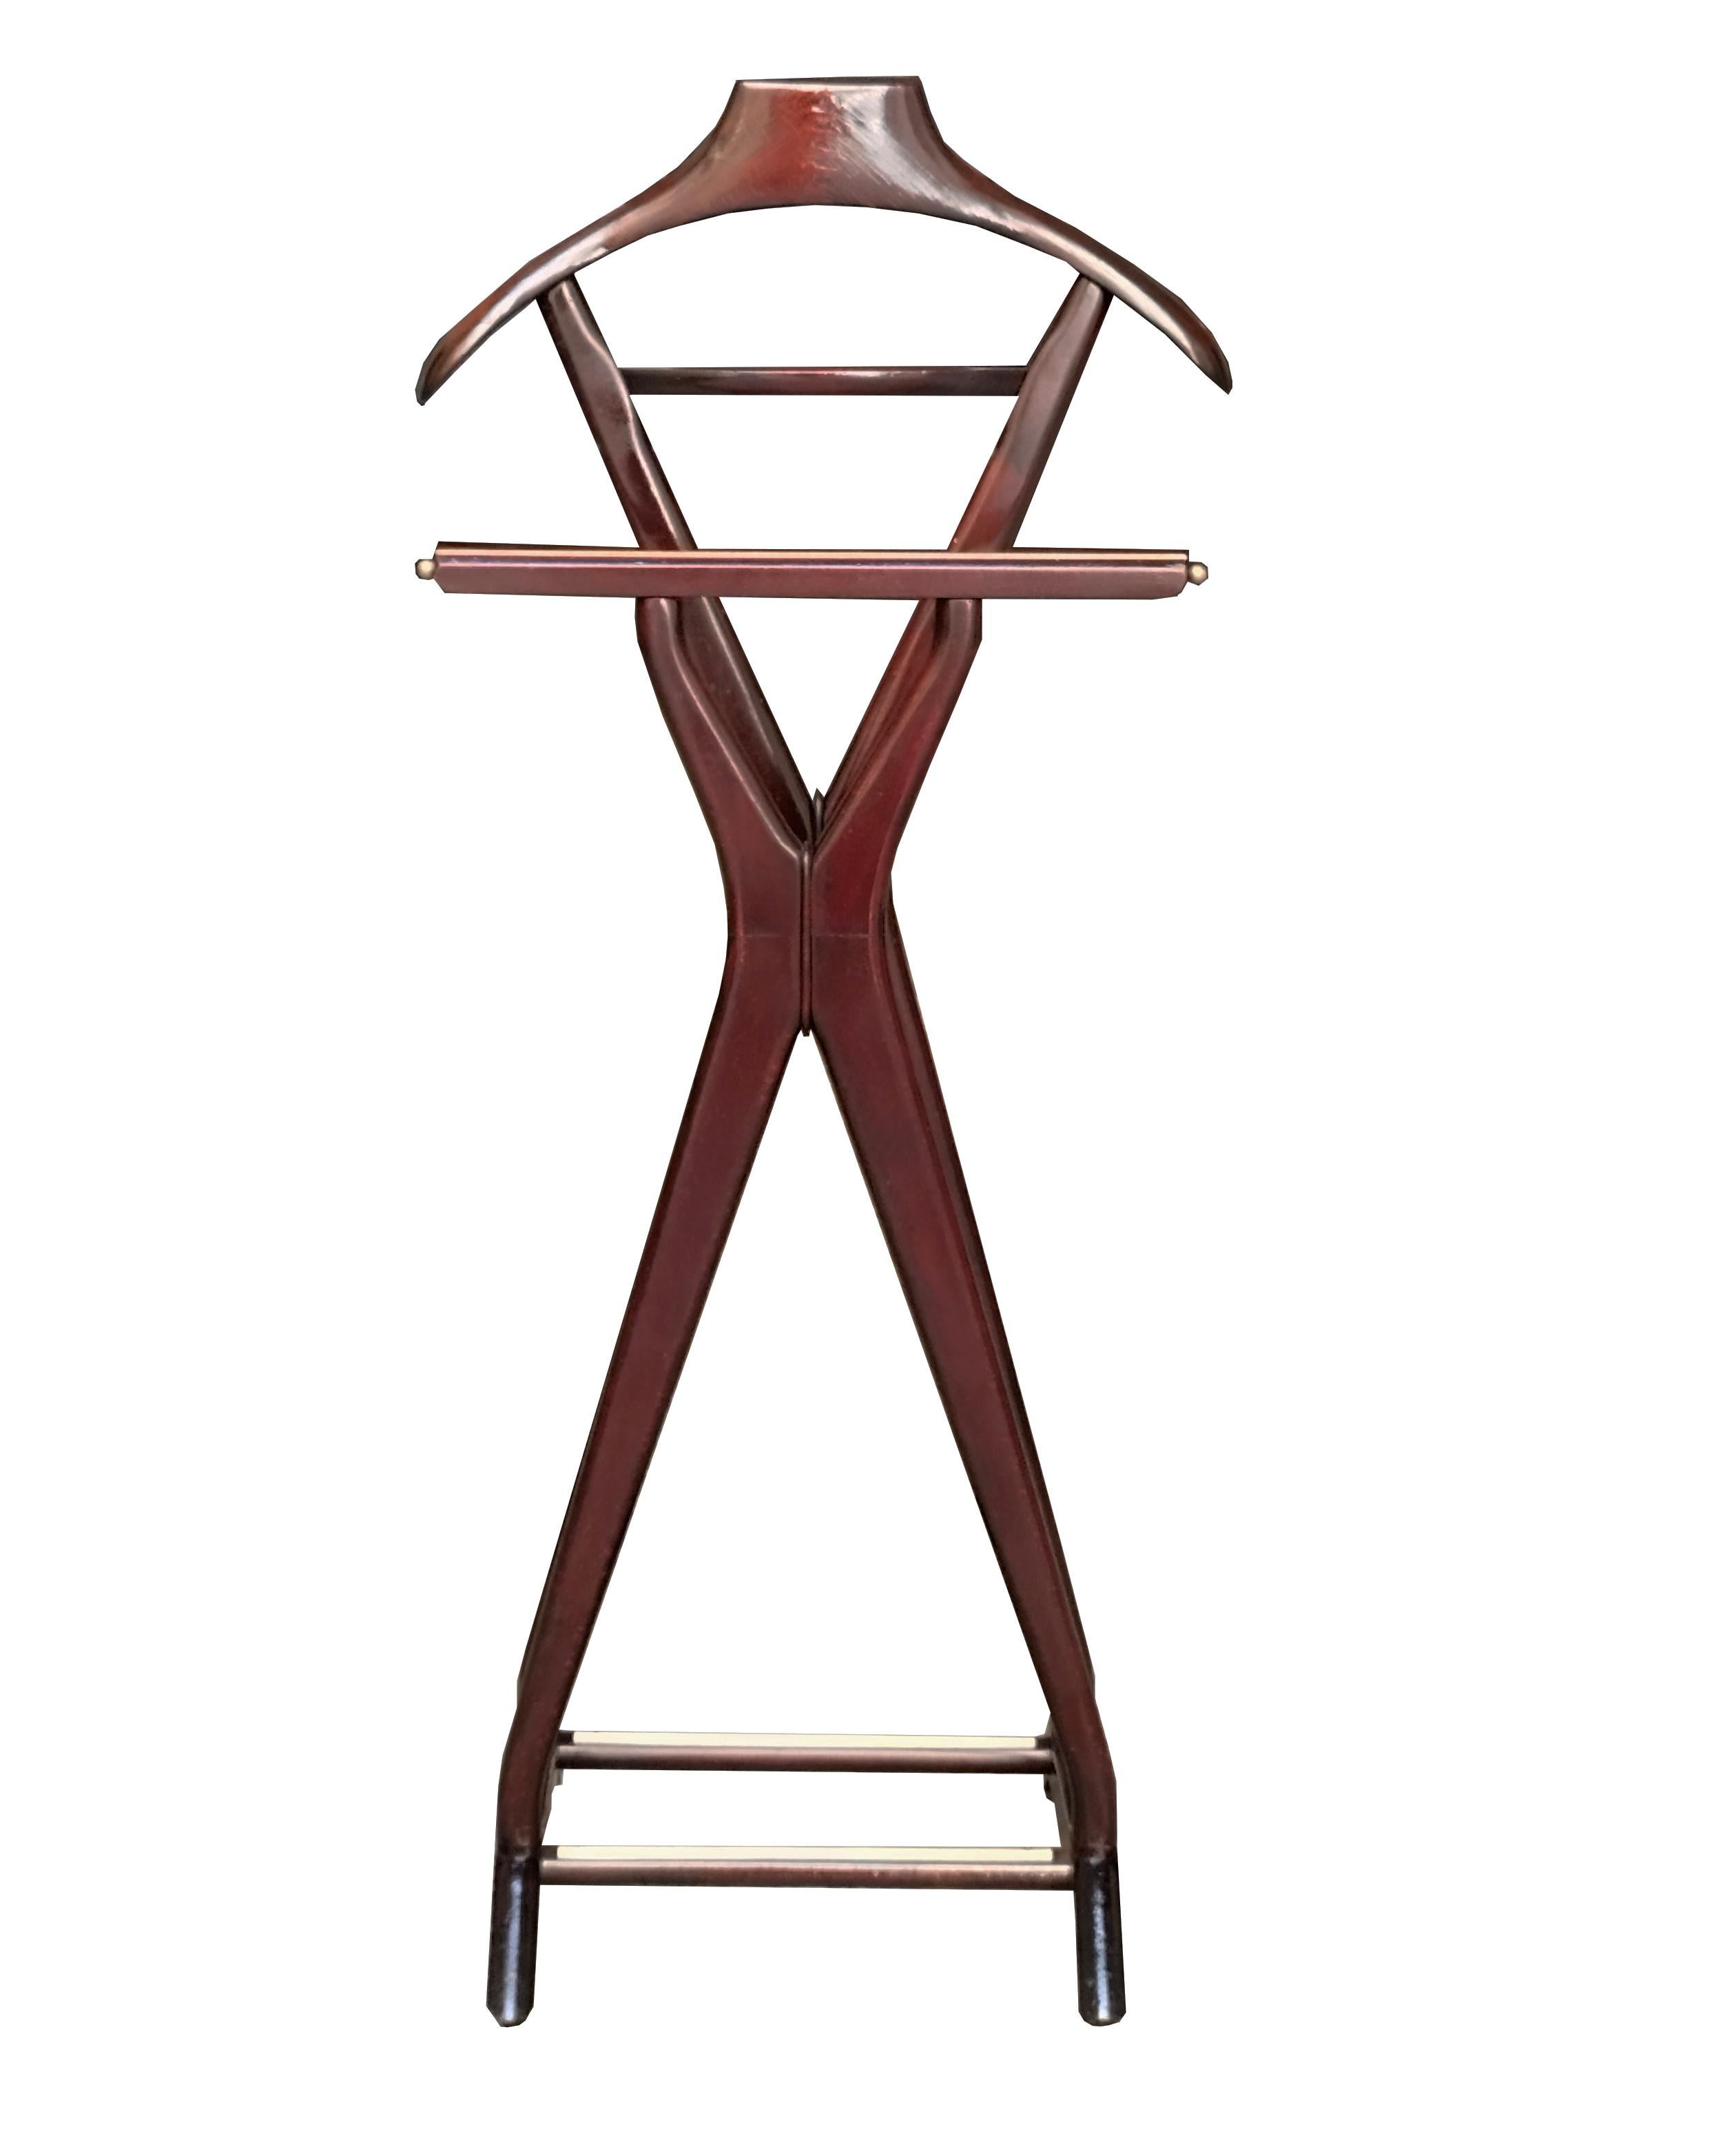 Servomuto en bois conçu par Ico Parisi dans les années 1960 pour la firme F.lli Reguitti Italia, en bon état, avec porte-veston, porte-pantalon, porte-chaussure, porte-cravate ou porte-écharpe, et petite étagère centrale. Marque déposée Fratelli